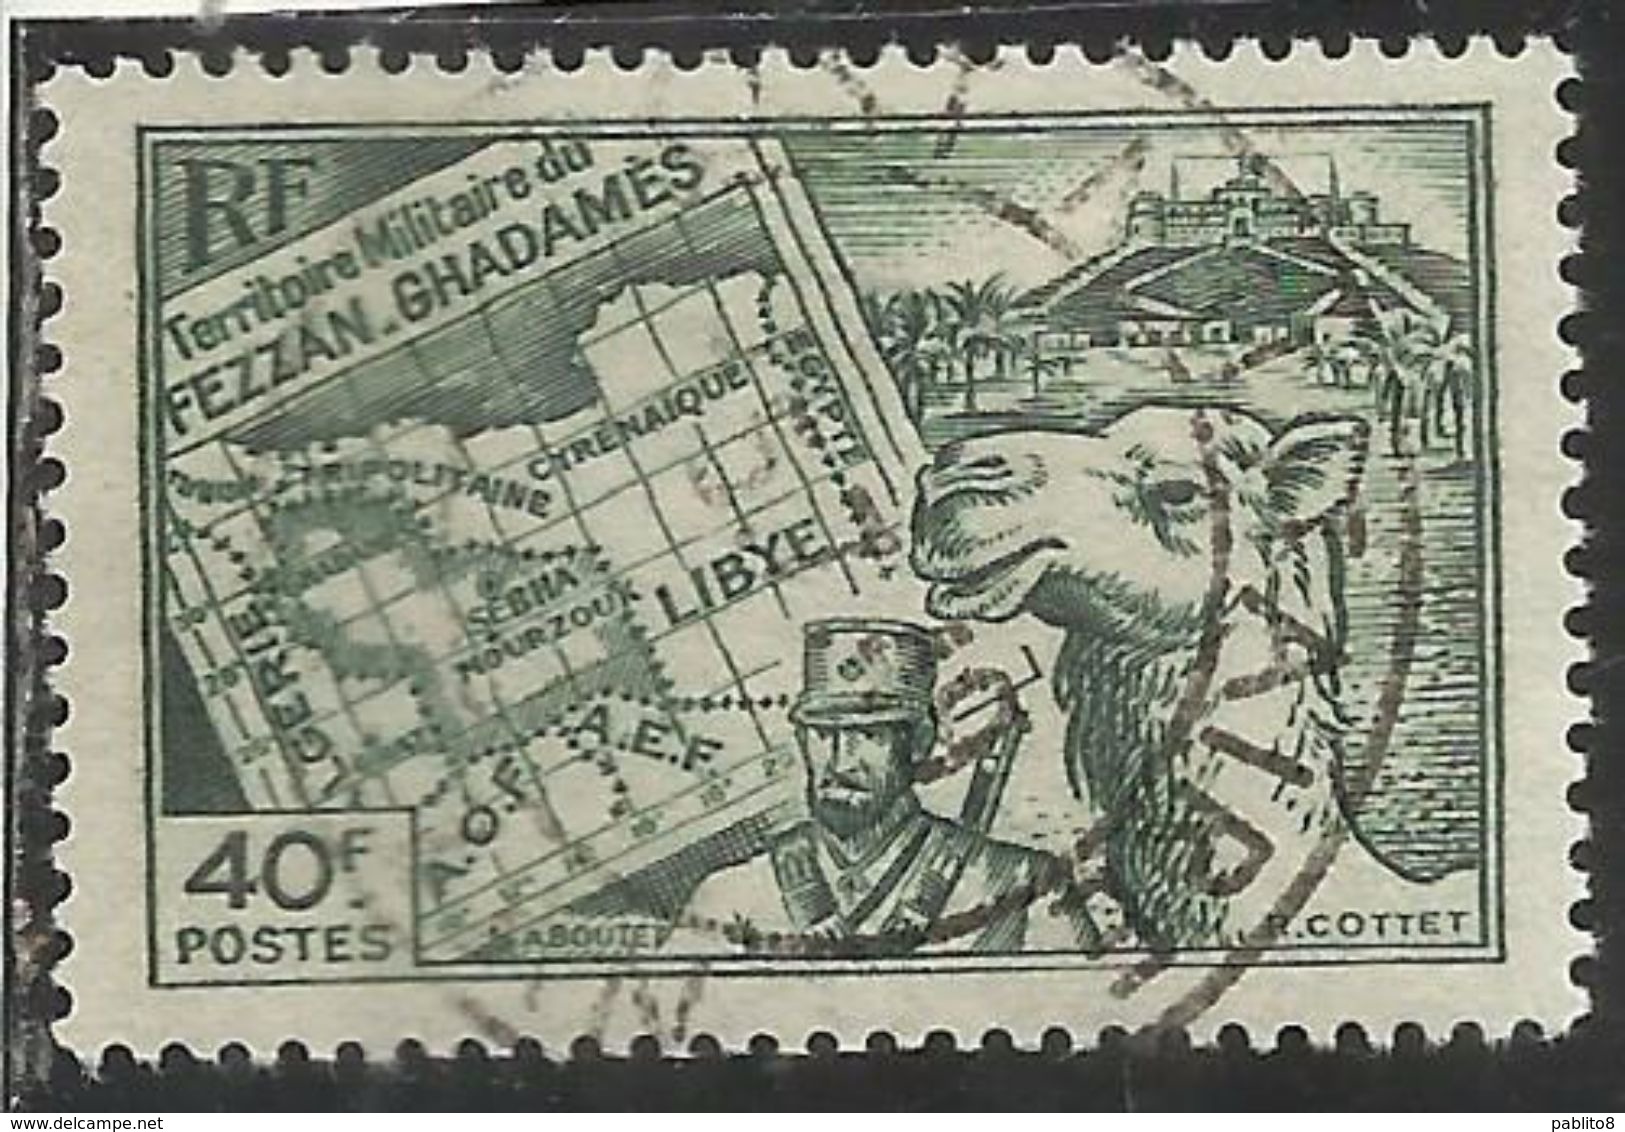 FEZZAN E GHADAMES 1946 TERRITORIO MILITARE MILITAIRE CARTA E MEHARISTA MAP F 40f USATO USED OBLITERE' - Unused Stamps